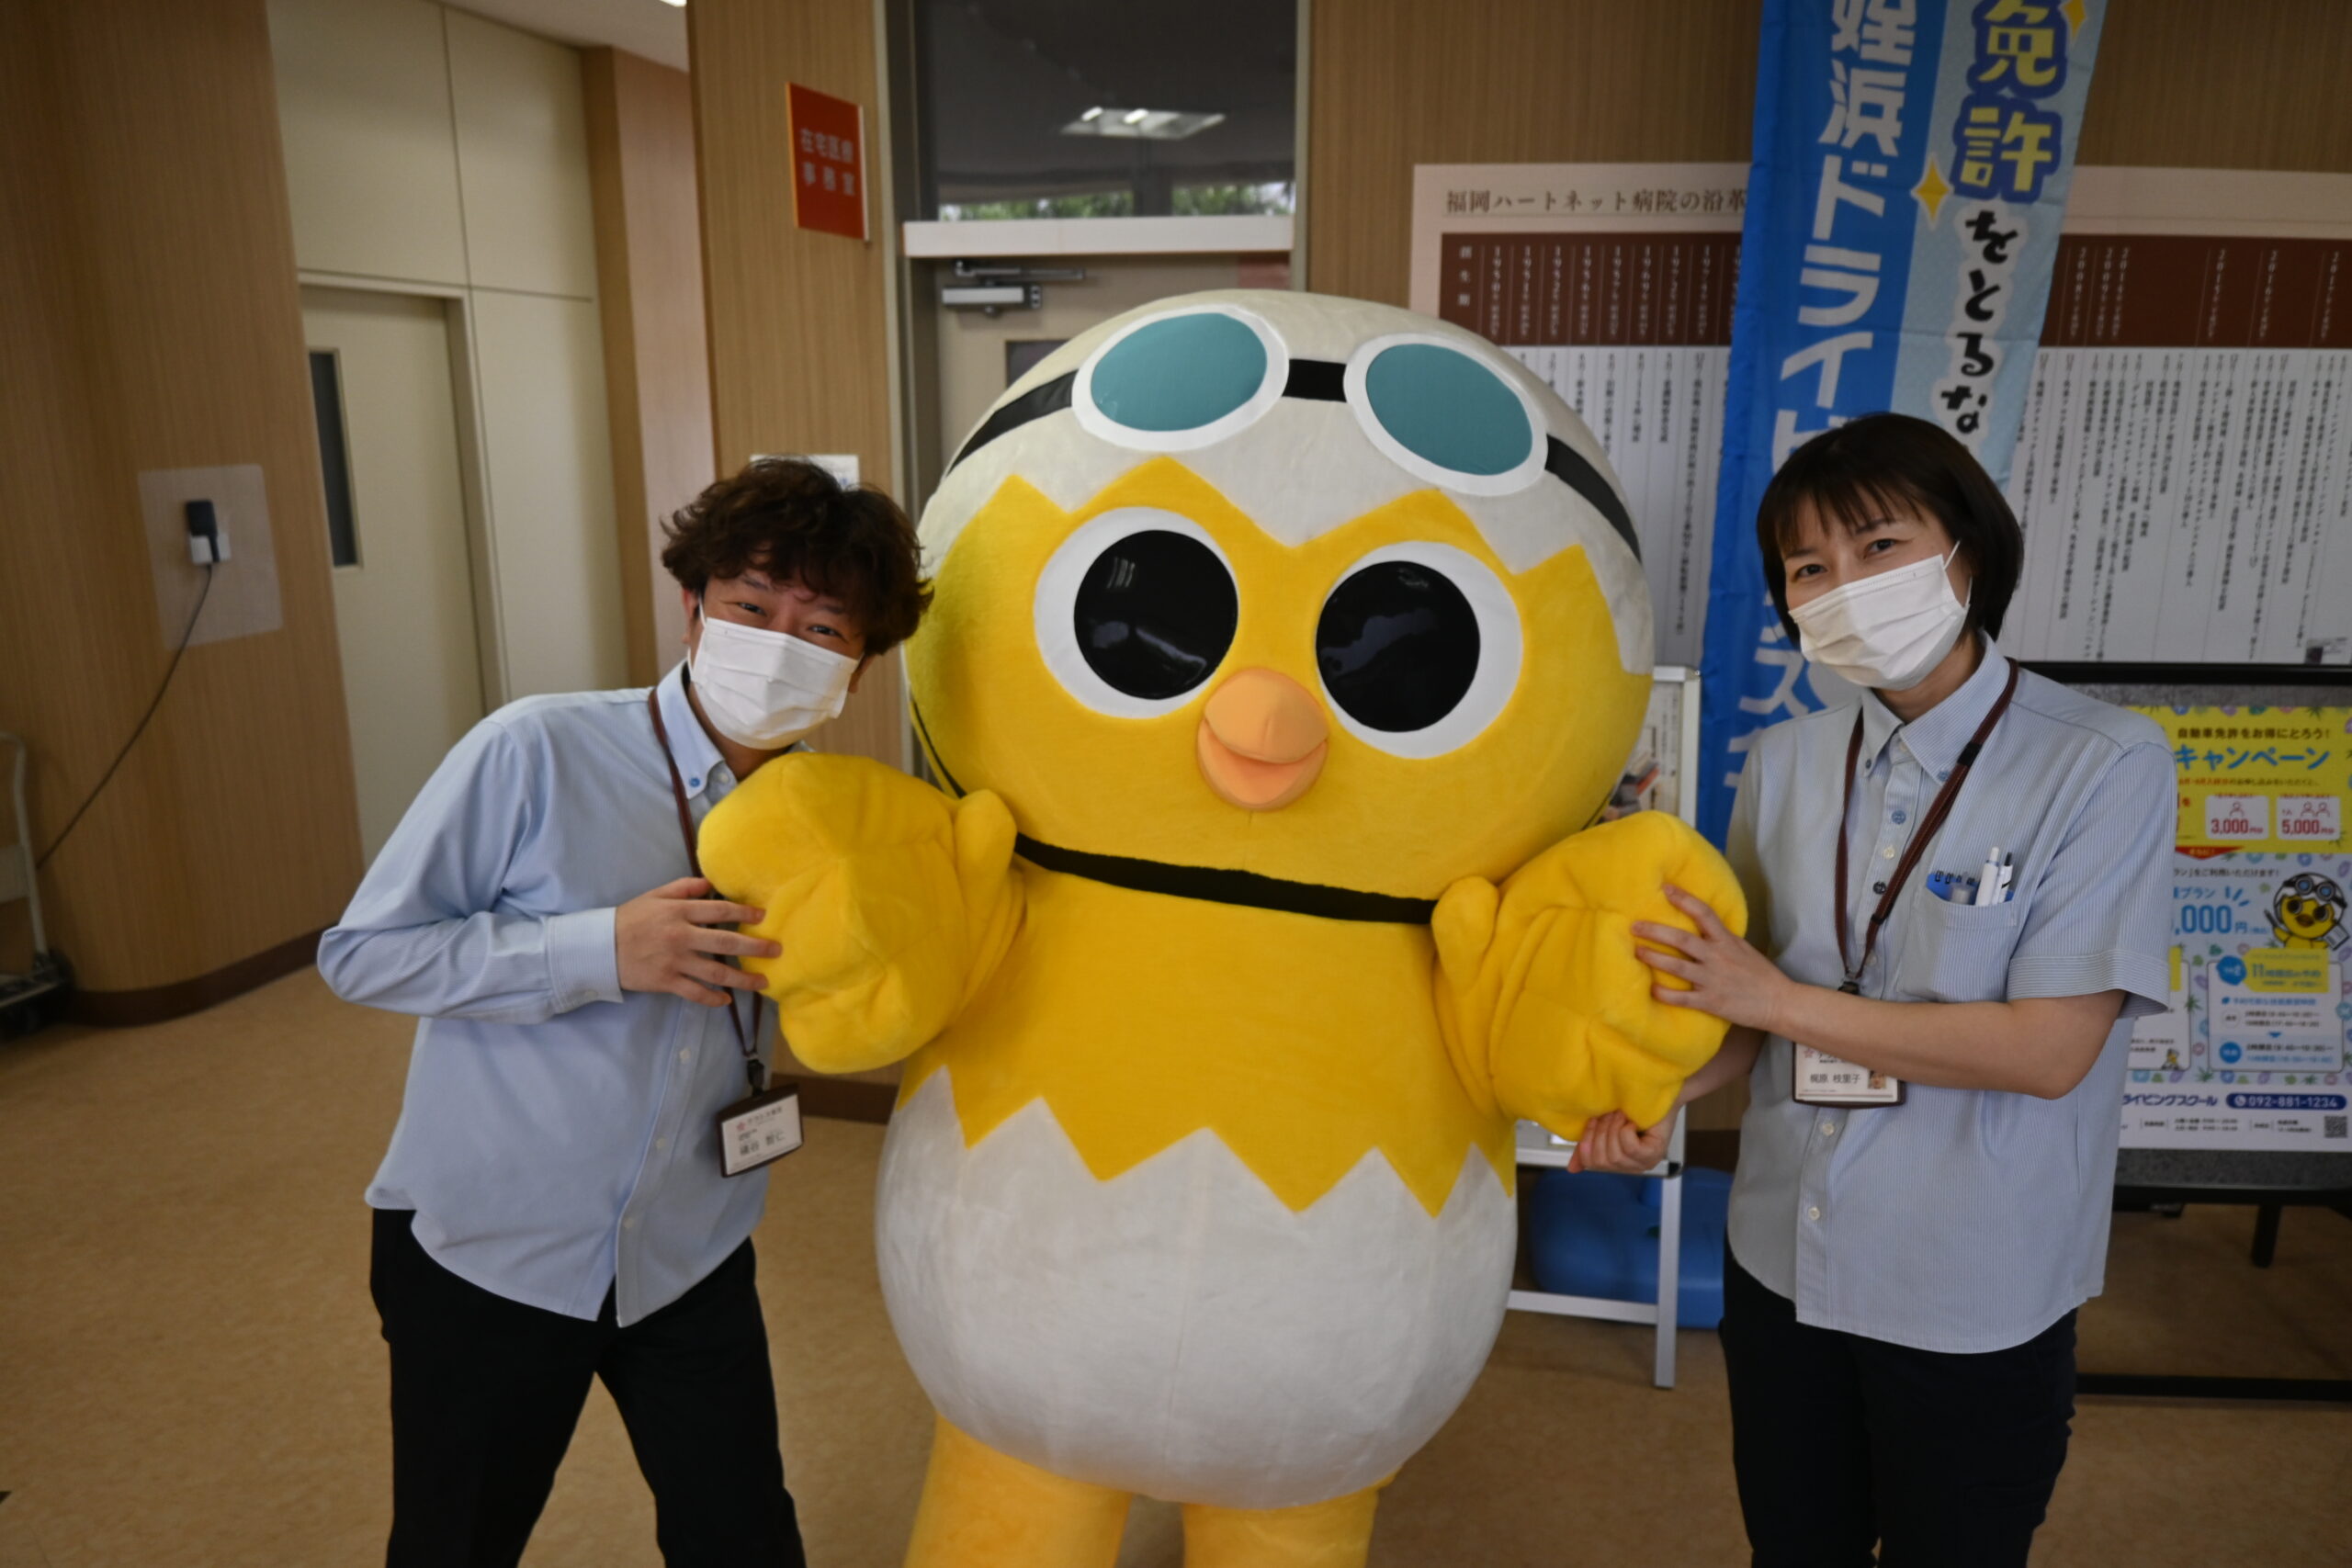 姪浜ドライビングスクールのマスコットキャラクター「めんきょとり丸」くんもハートフェスタを盛り上げに来てくれました。